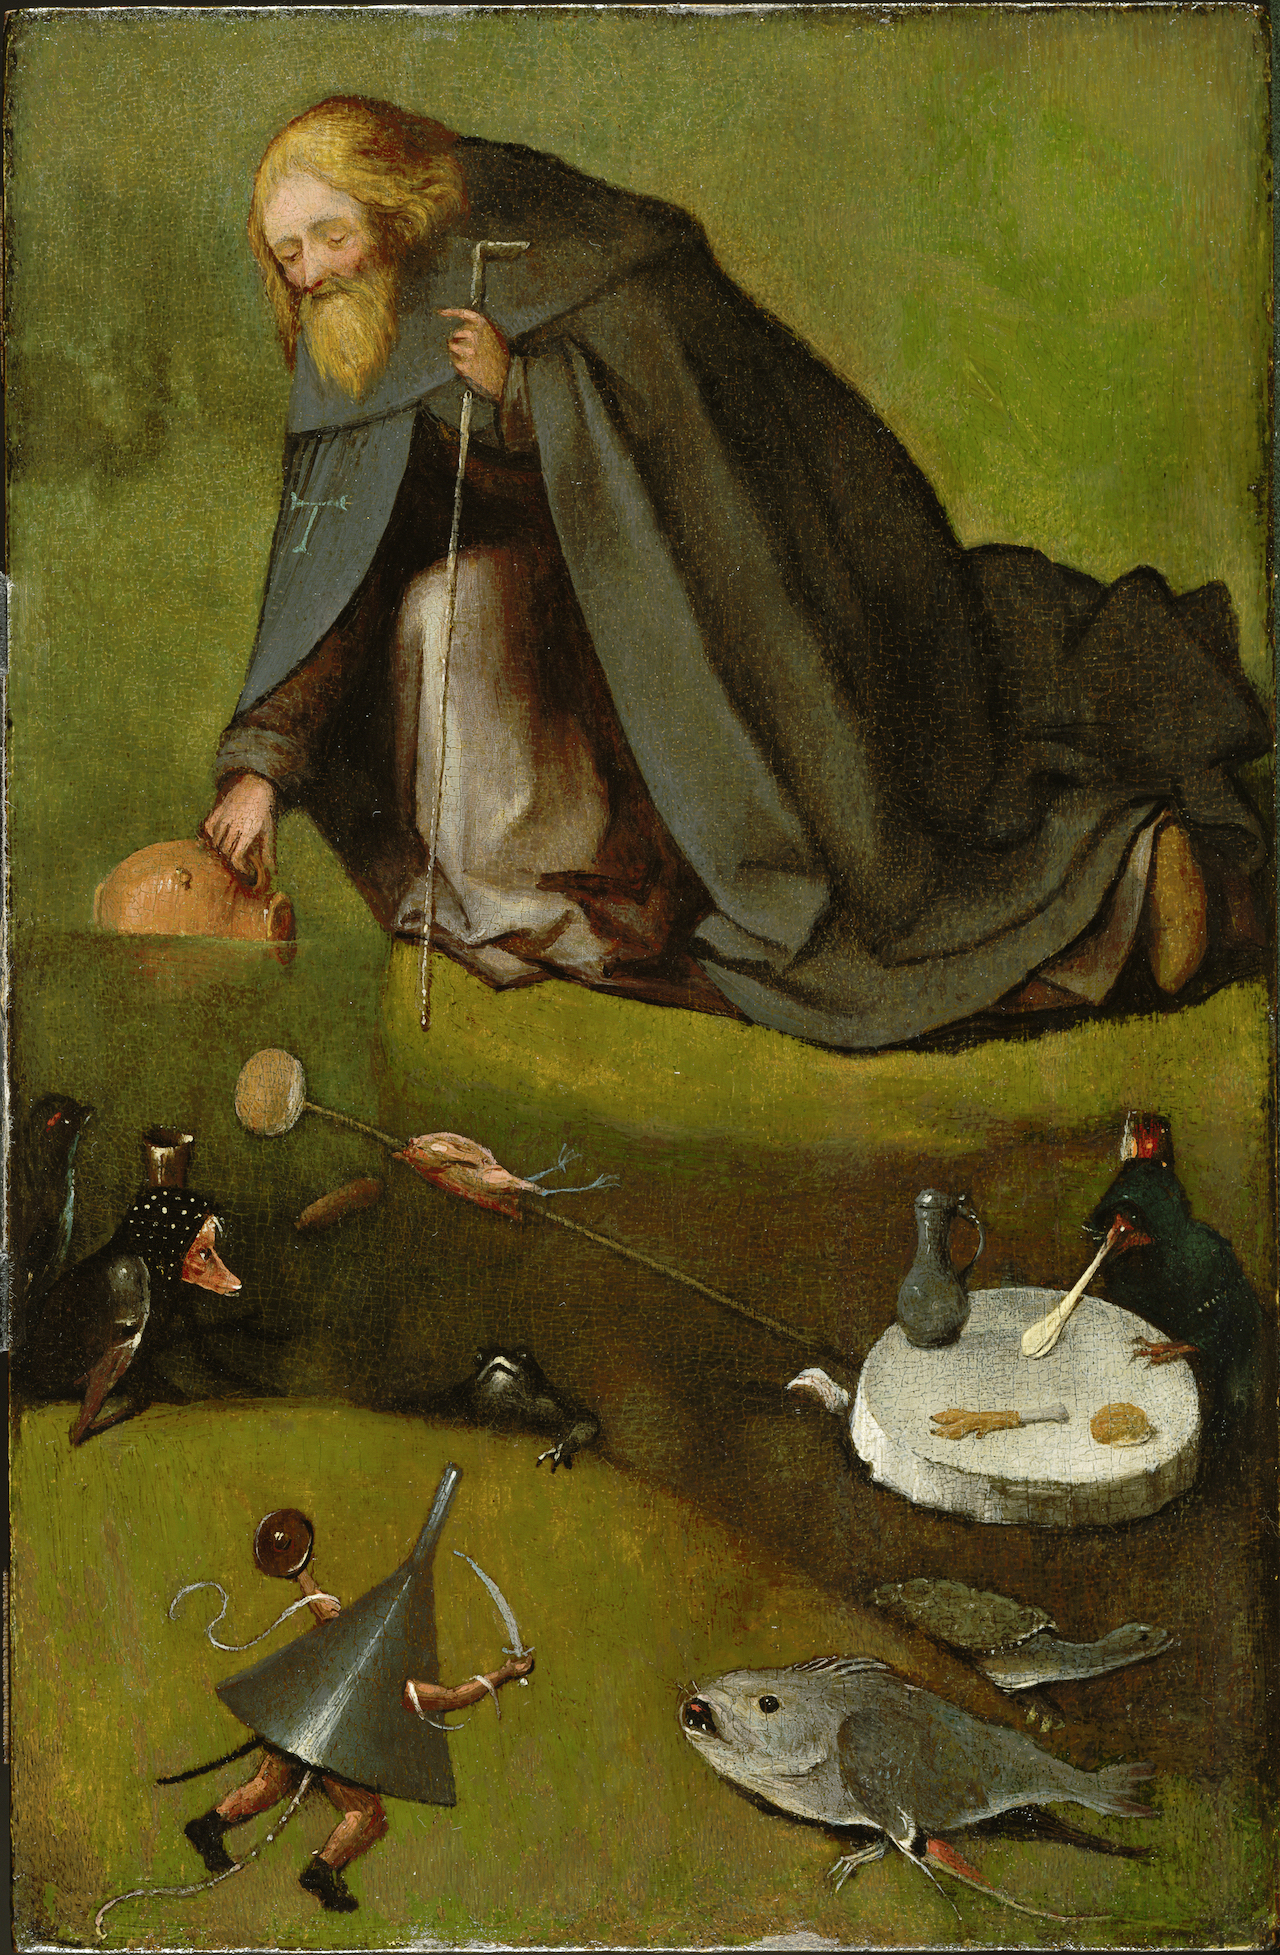 Die Versuchung des Heiligen Antonius by Hieronymus Bosch - 1500-1510 - 38.58 × 25.4 cm Nelson-Atkins Museum of Art